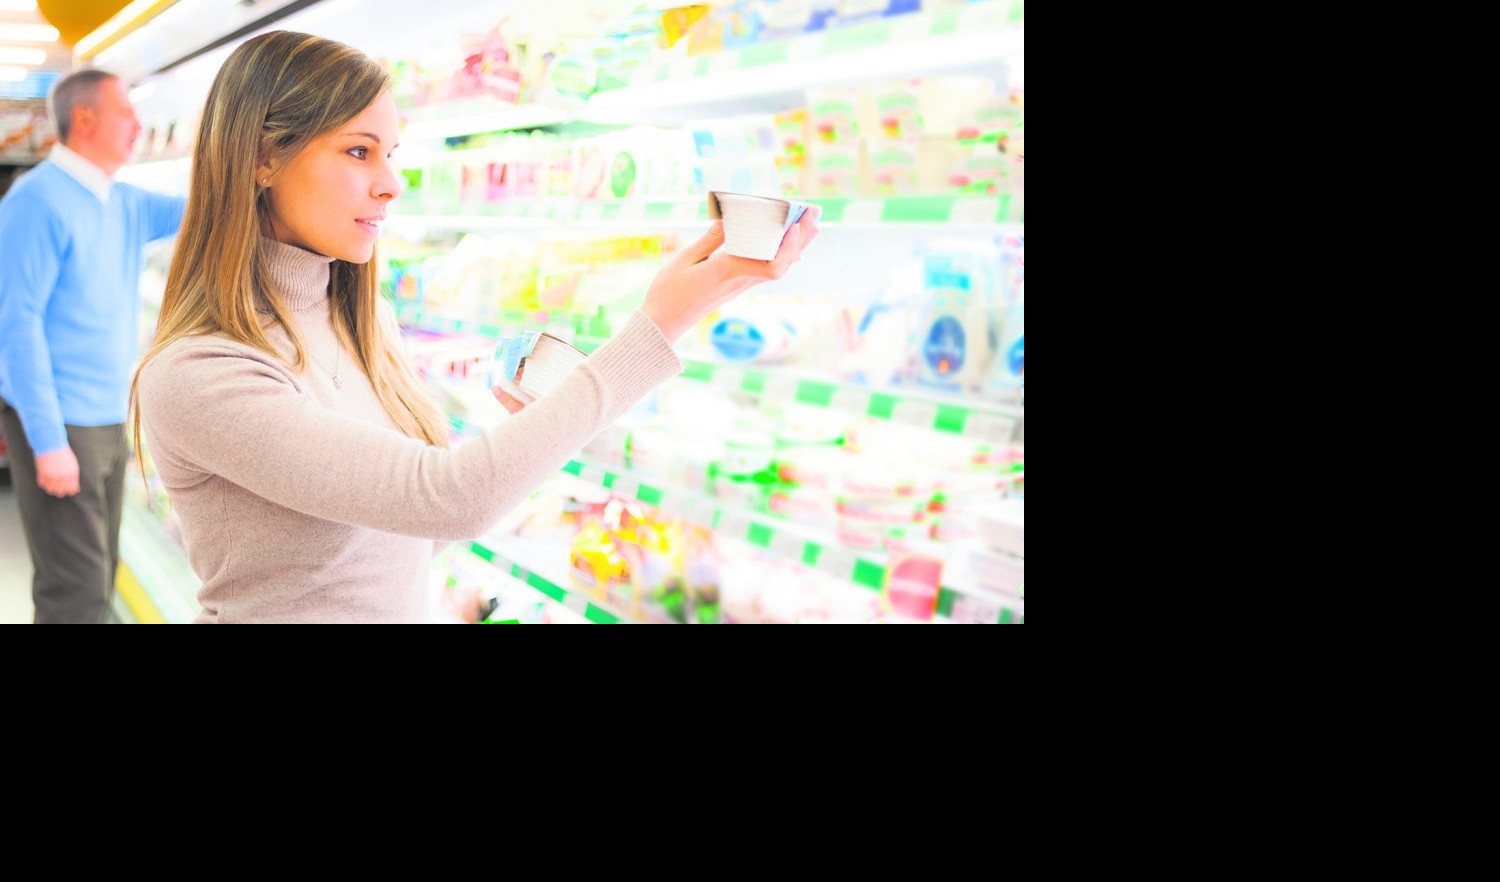 LAJT proizvodi, DA ili NE? NUTRICIONISTA otkriva da li su BOLJI od 'originala'!